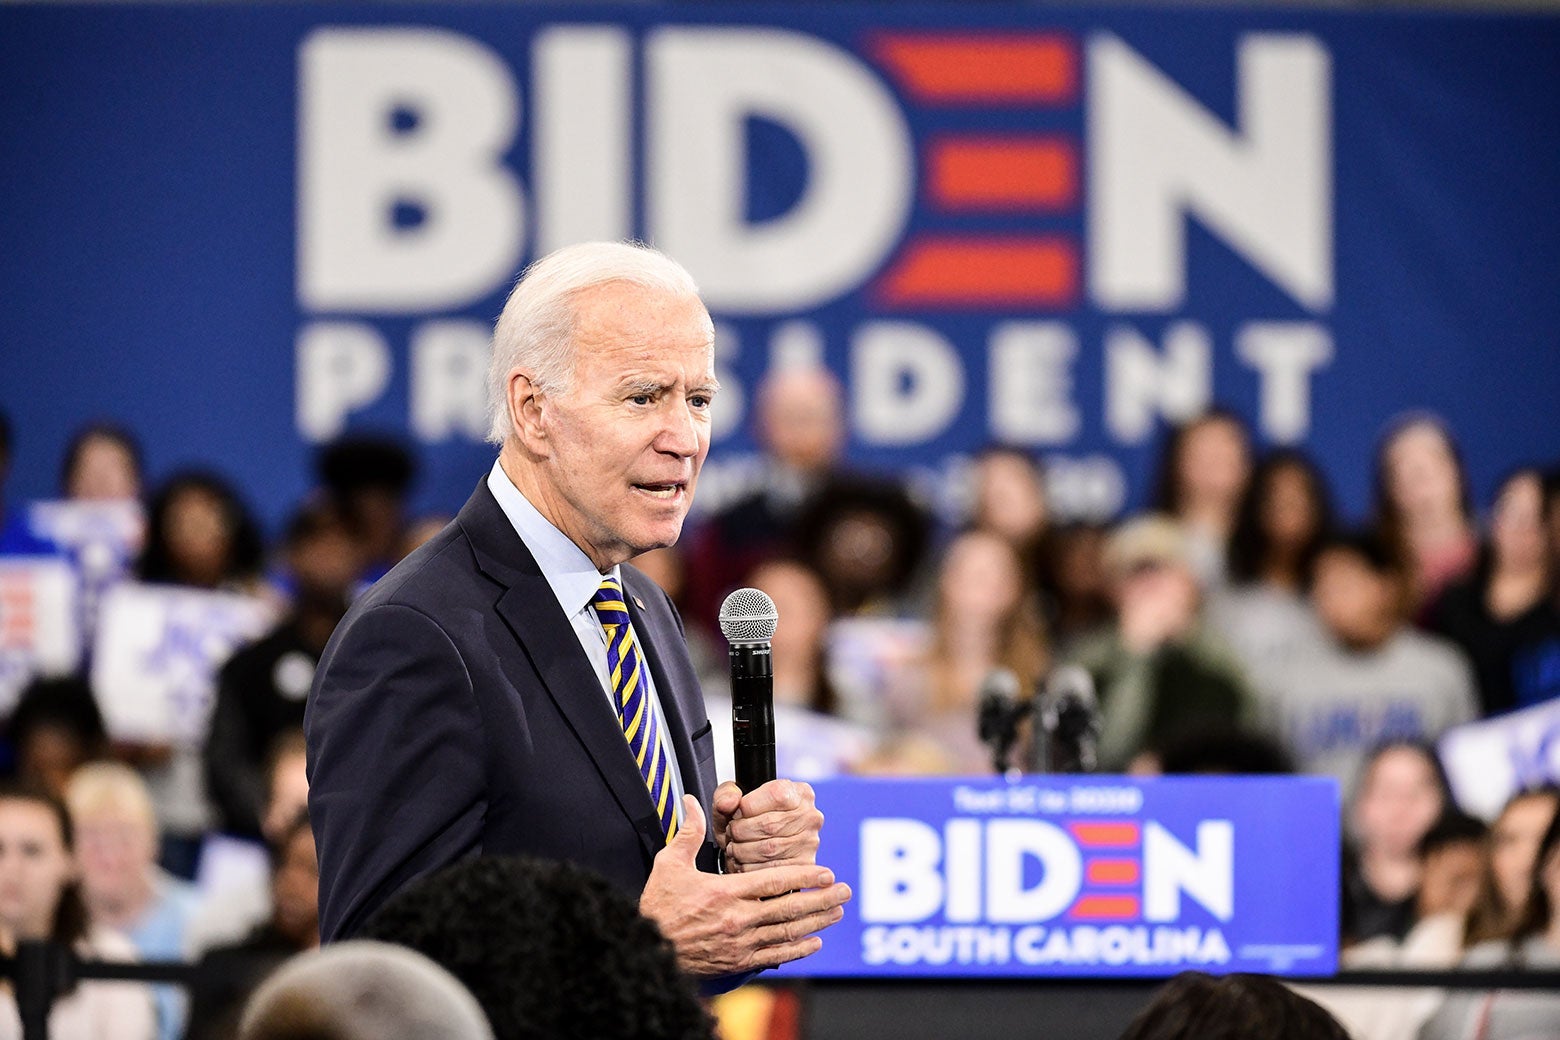 Joe Biden at a campaign event.